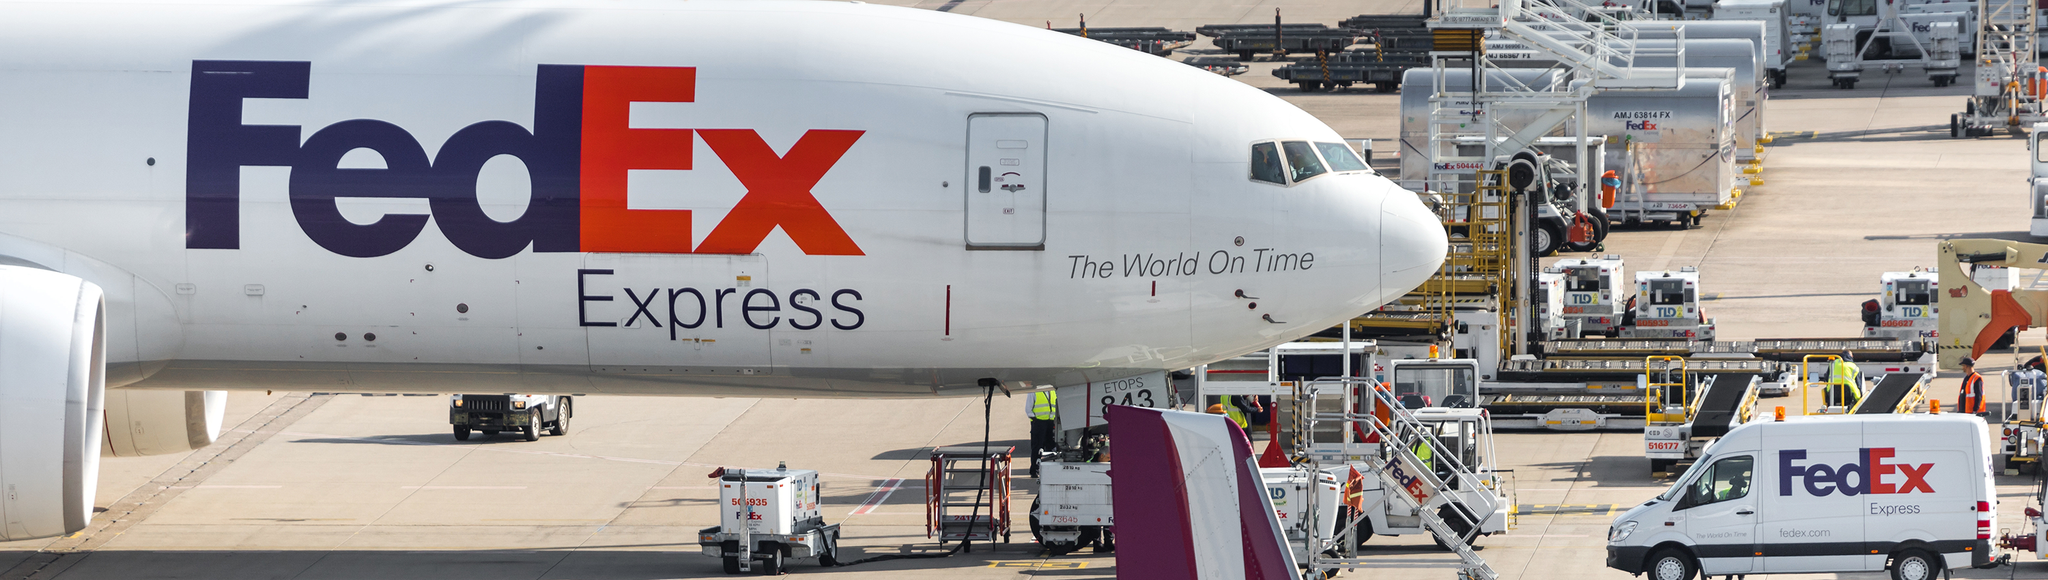 FedEx cargo airplane